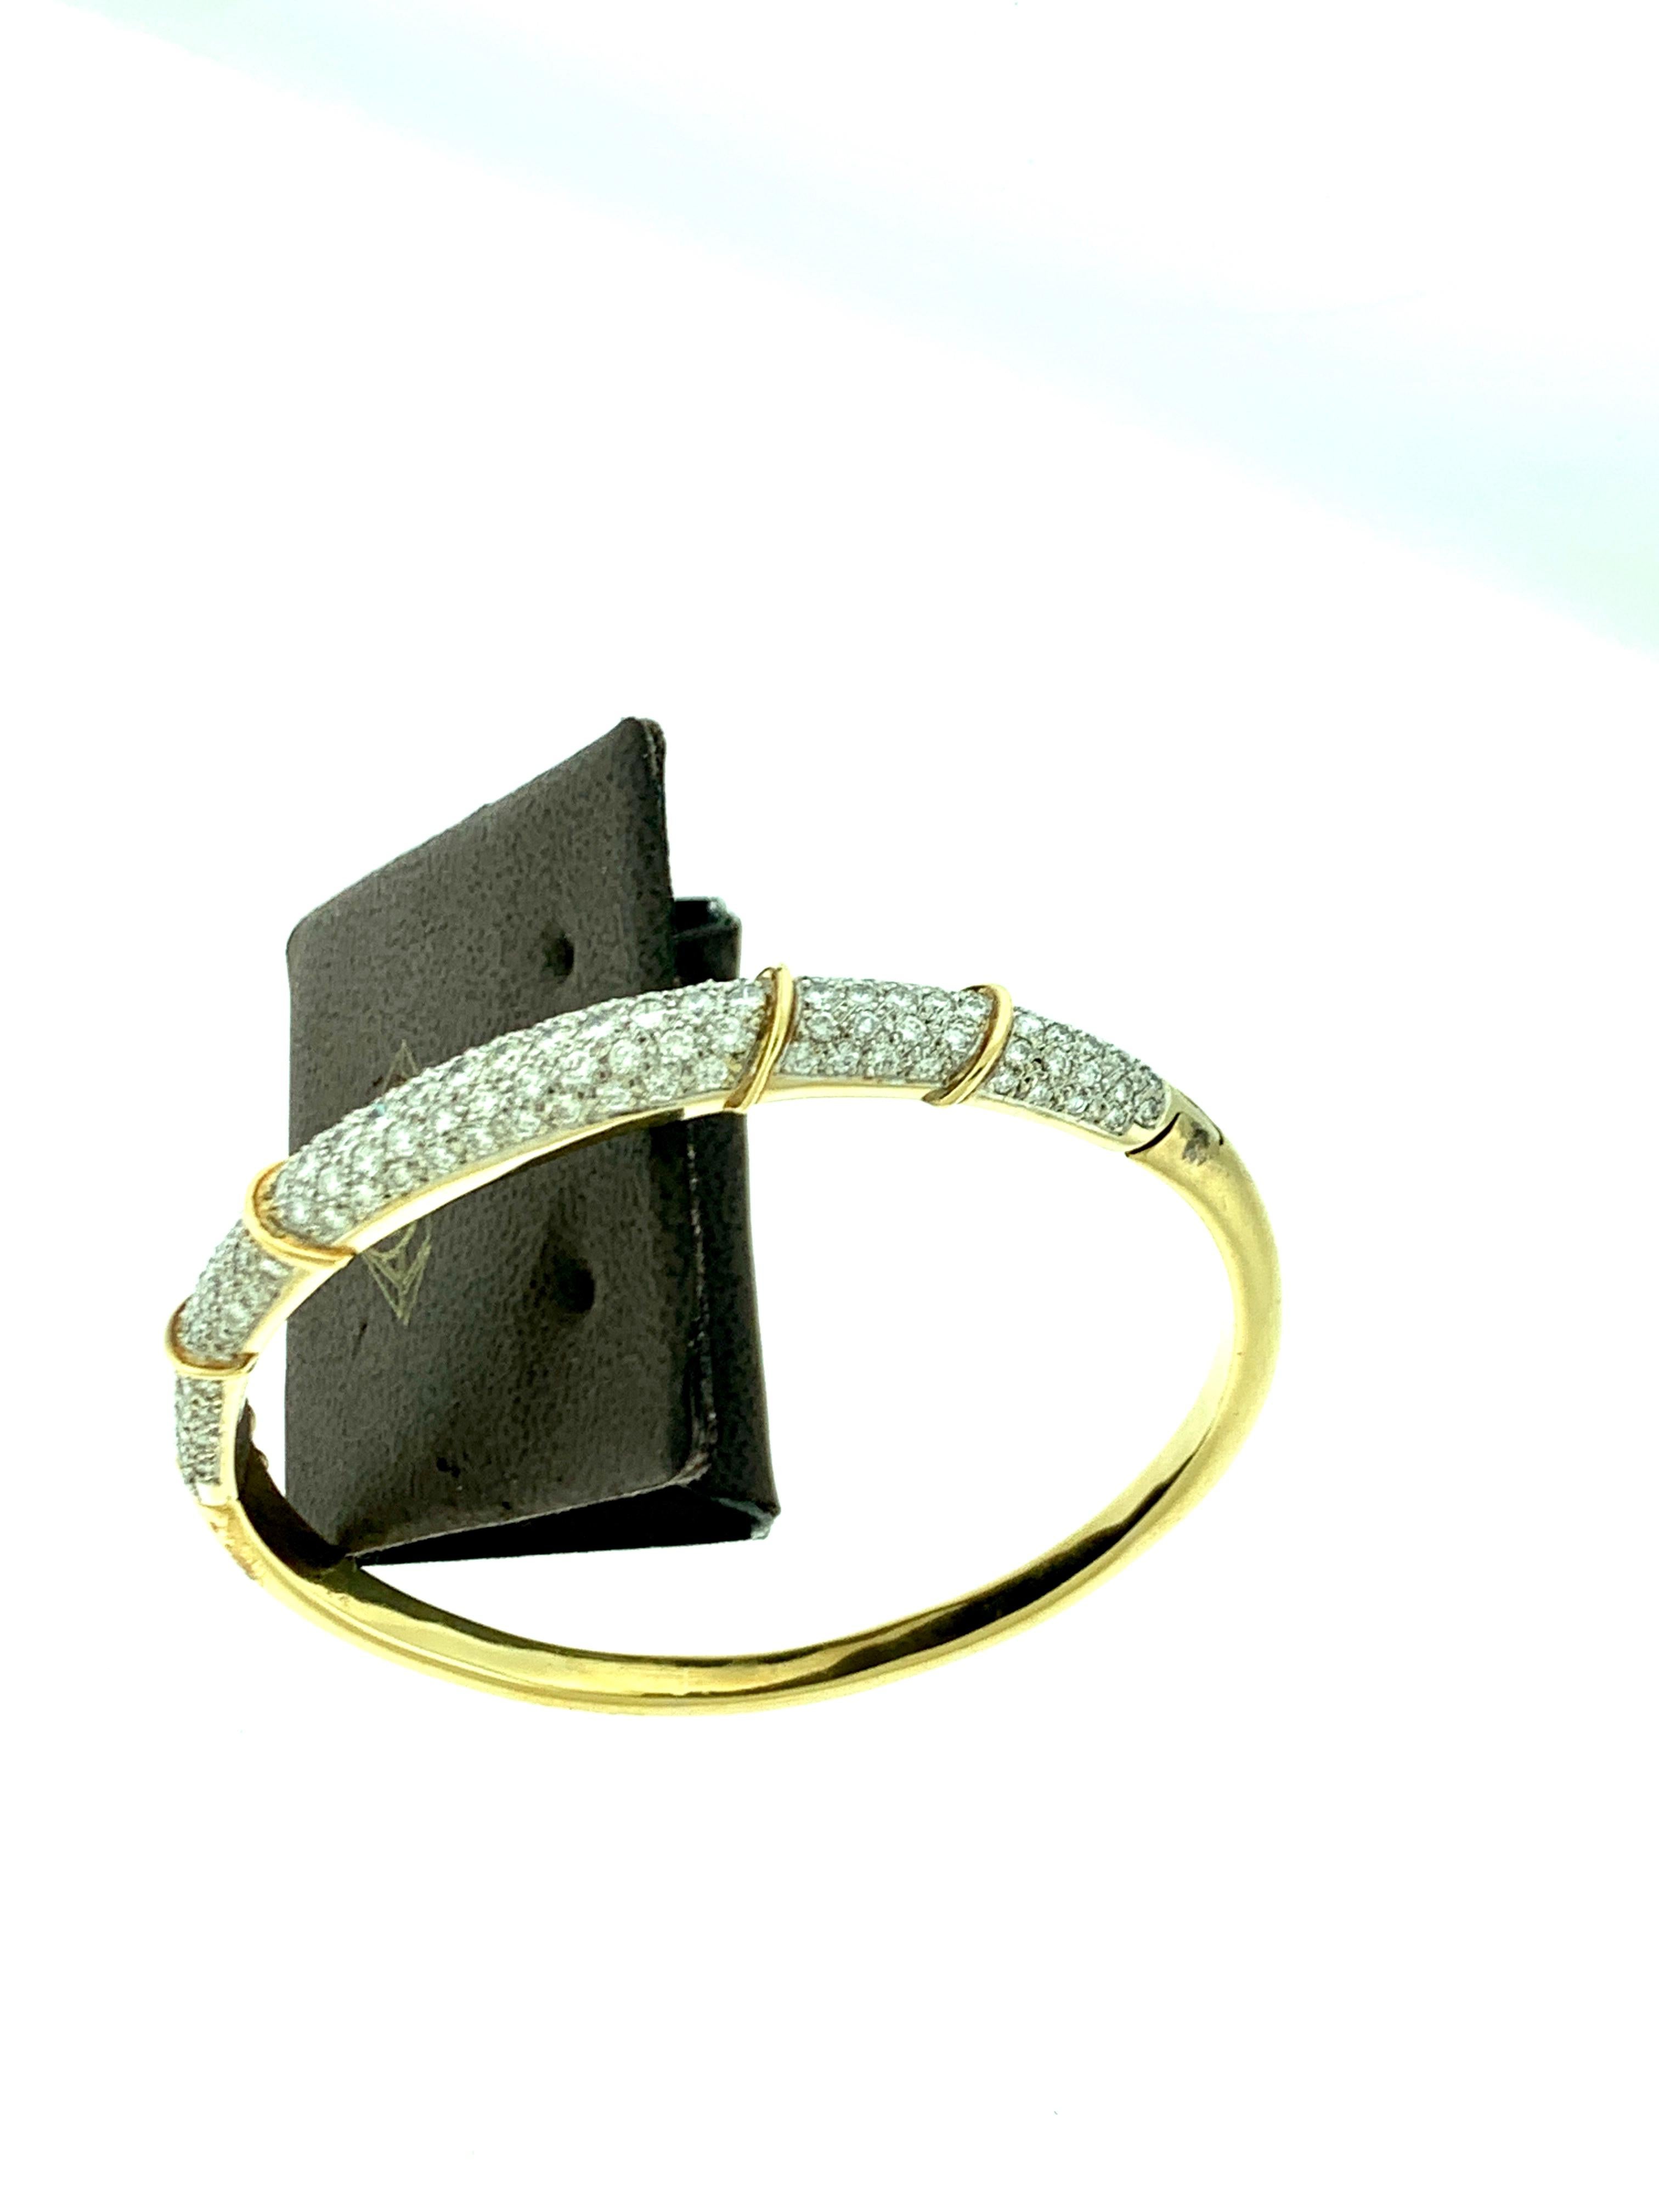 6 Carat Diamond Large Bangle /Bracelet in 18 Karat Yellow Gold 36 Grams 1